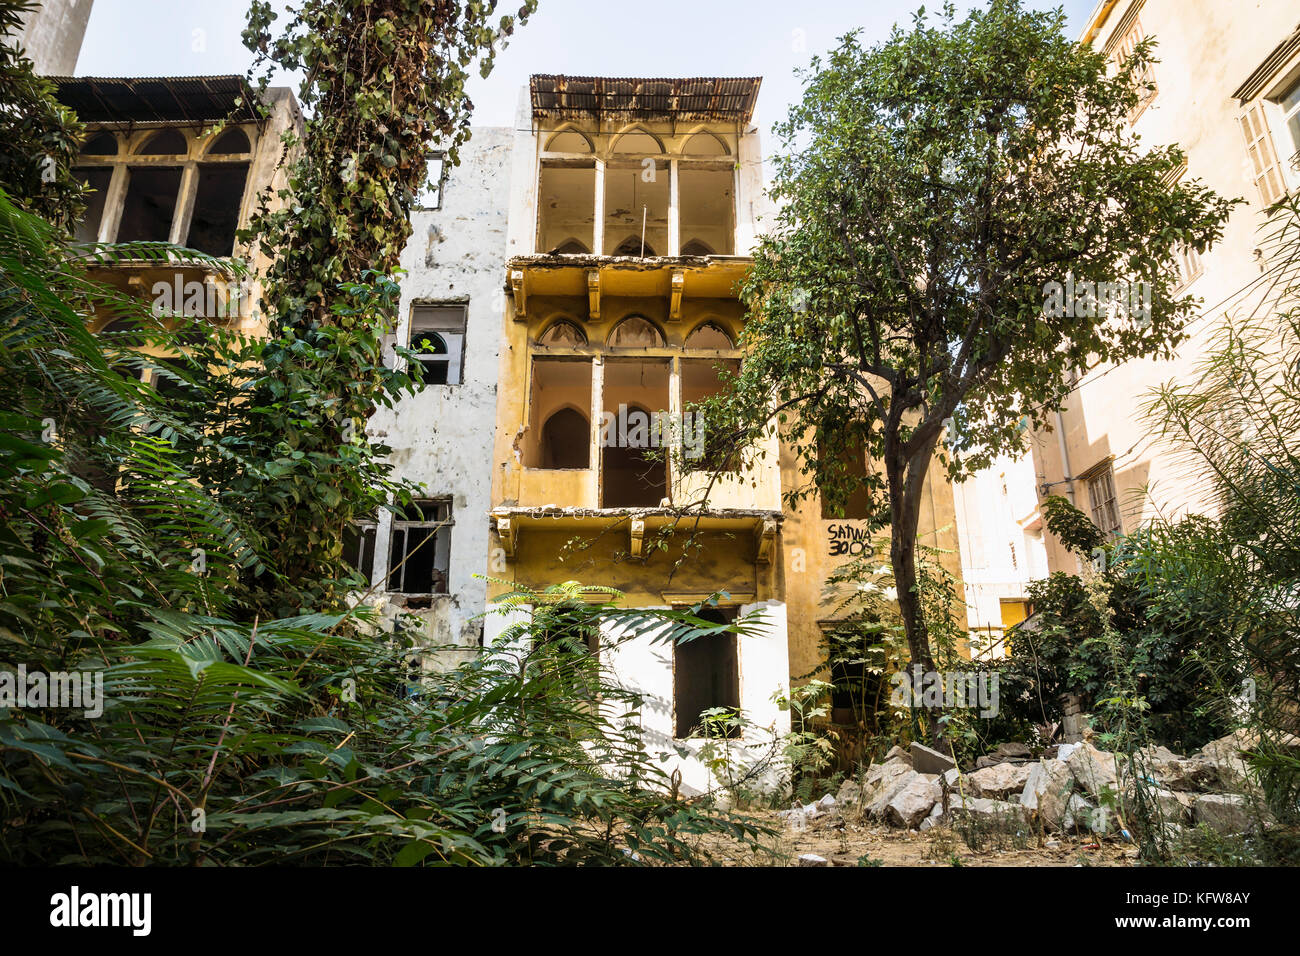 Ruines d'une maison traditionnelle libanaise entouré d'arbres et arbustes à Beyrouth, Liban Banque D'Images